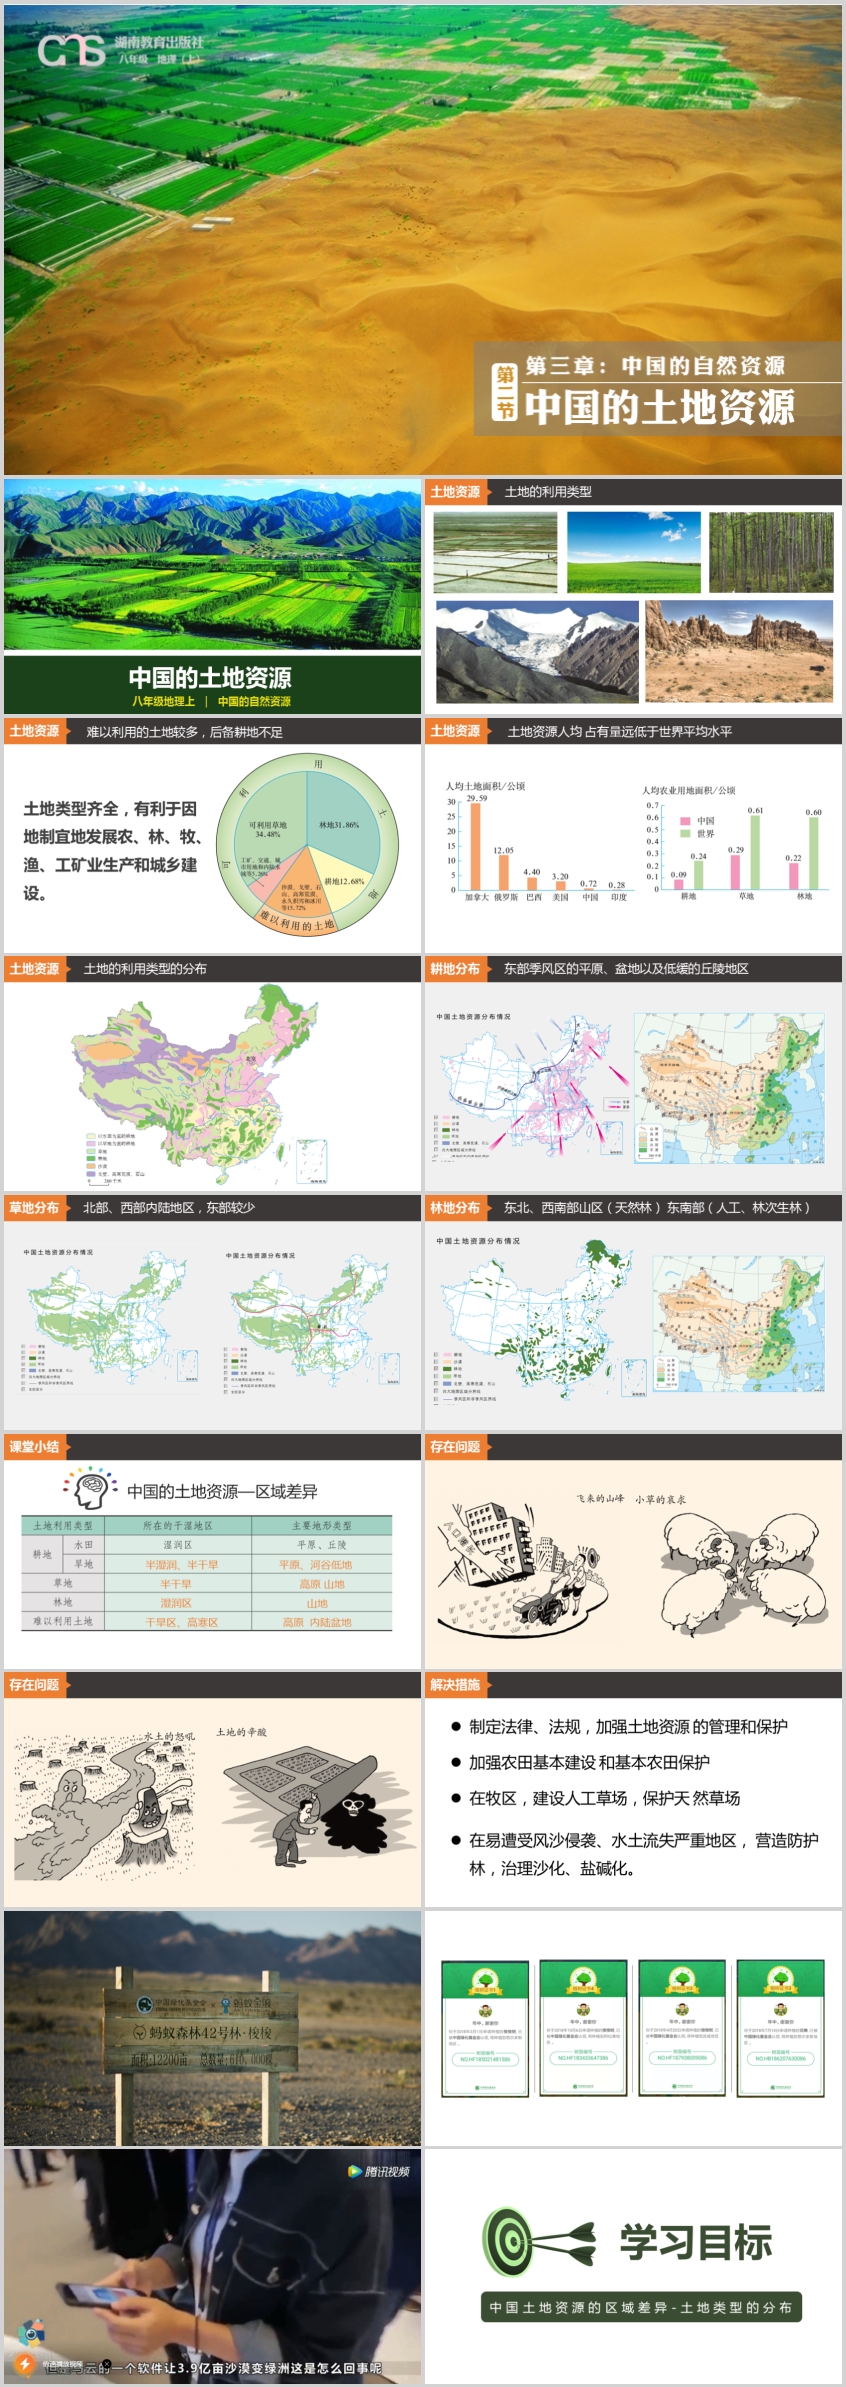 20181015中国的土地资源2.jpg